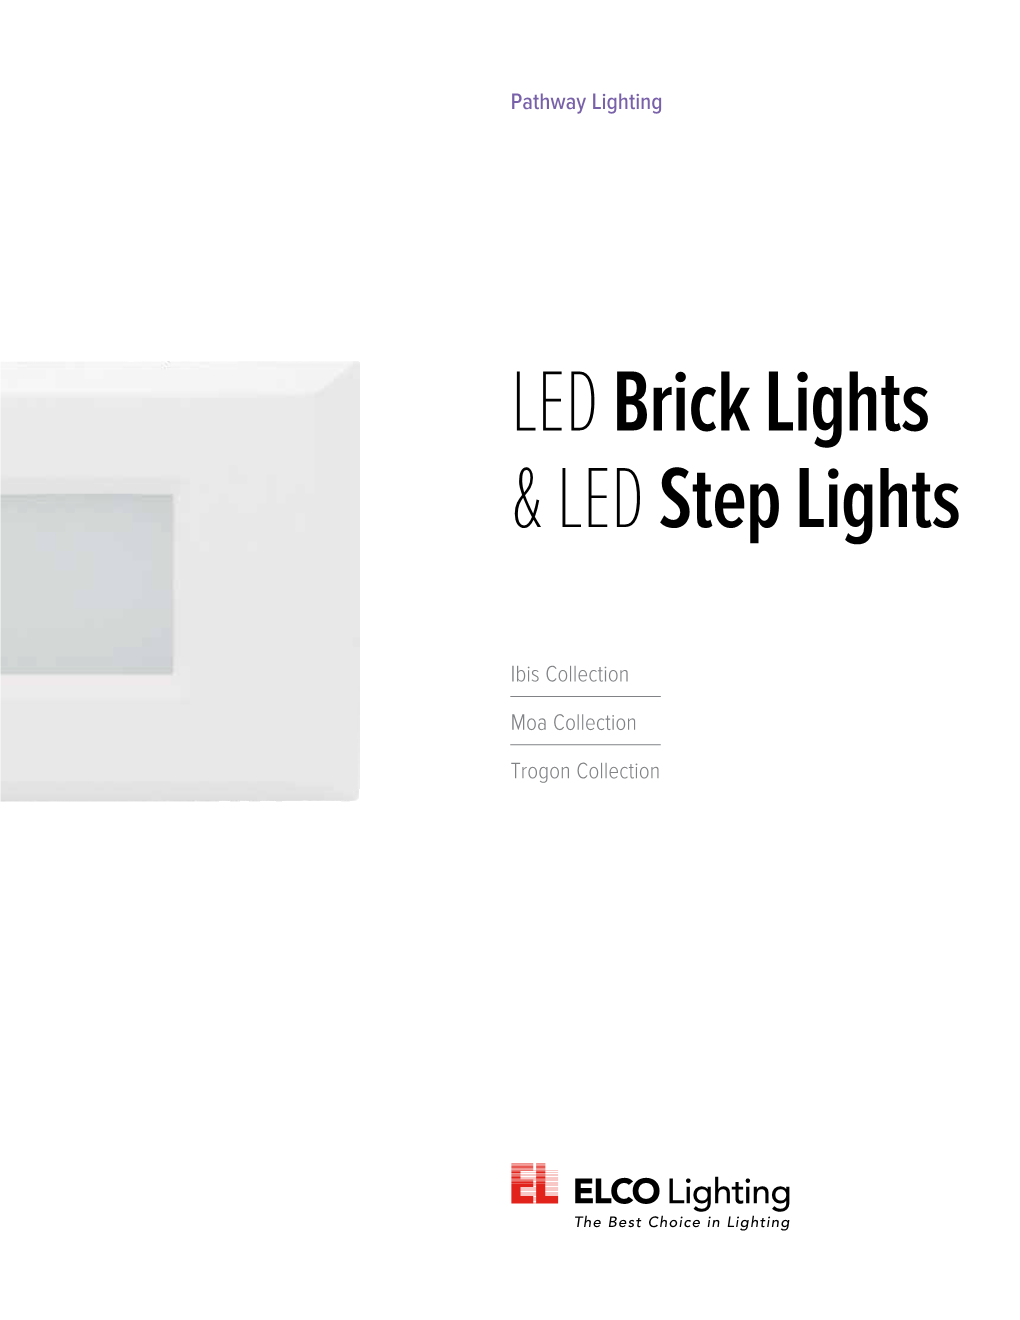 LED Brick Lights & LED Step Lights